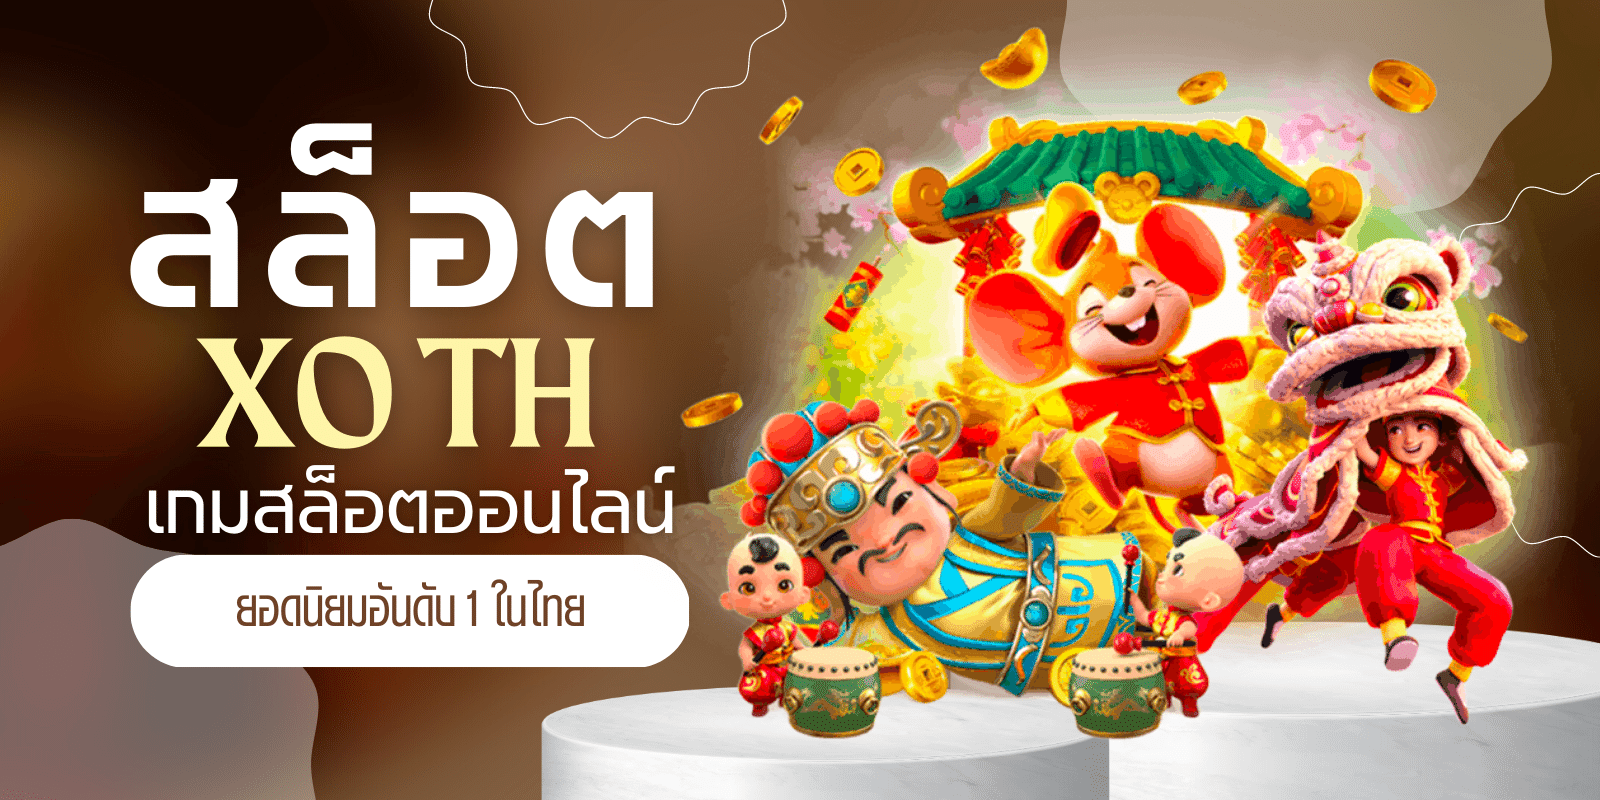 สล็อต xo th เกมสล็อตออนไลน์ยอดนิยมอันดับ 1 ในไทย